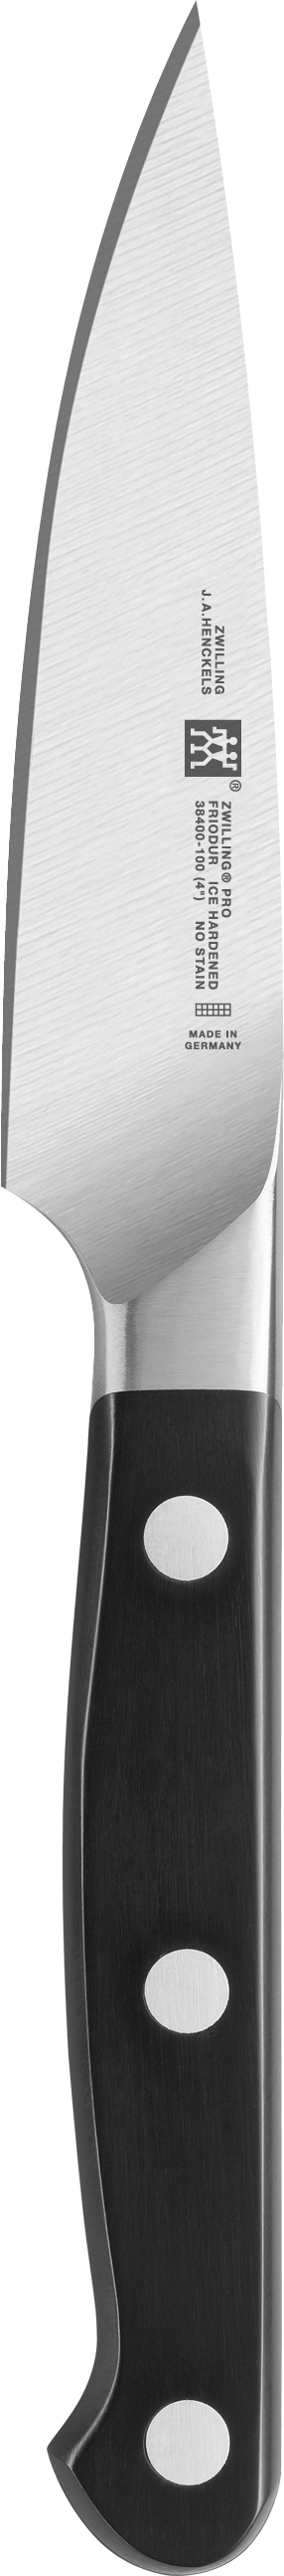 Zwilling Pro Fleischmesser 20 cm - 38400-201-0